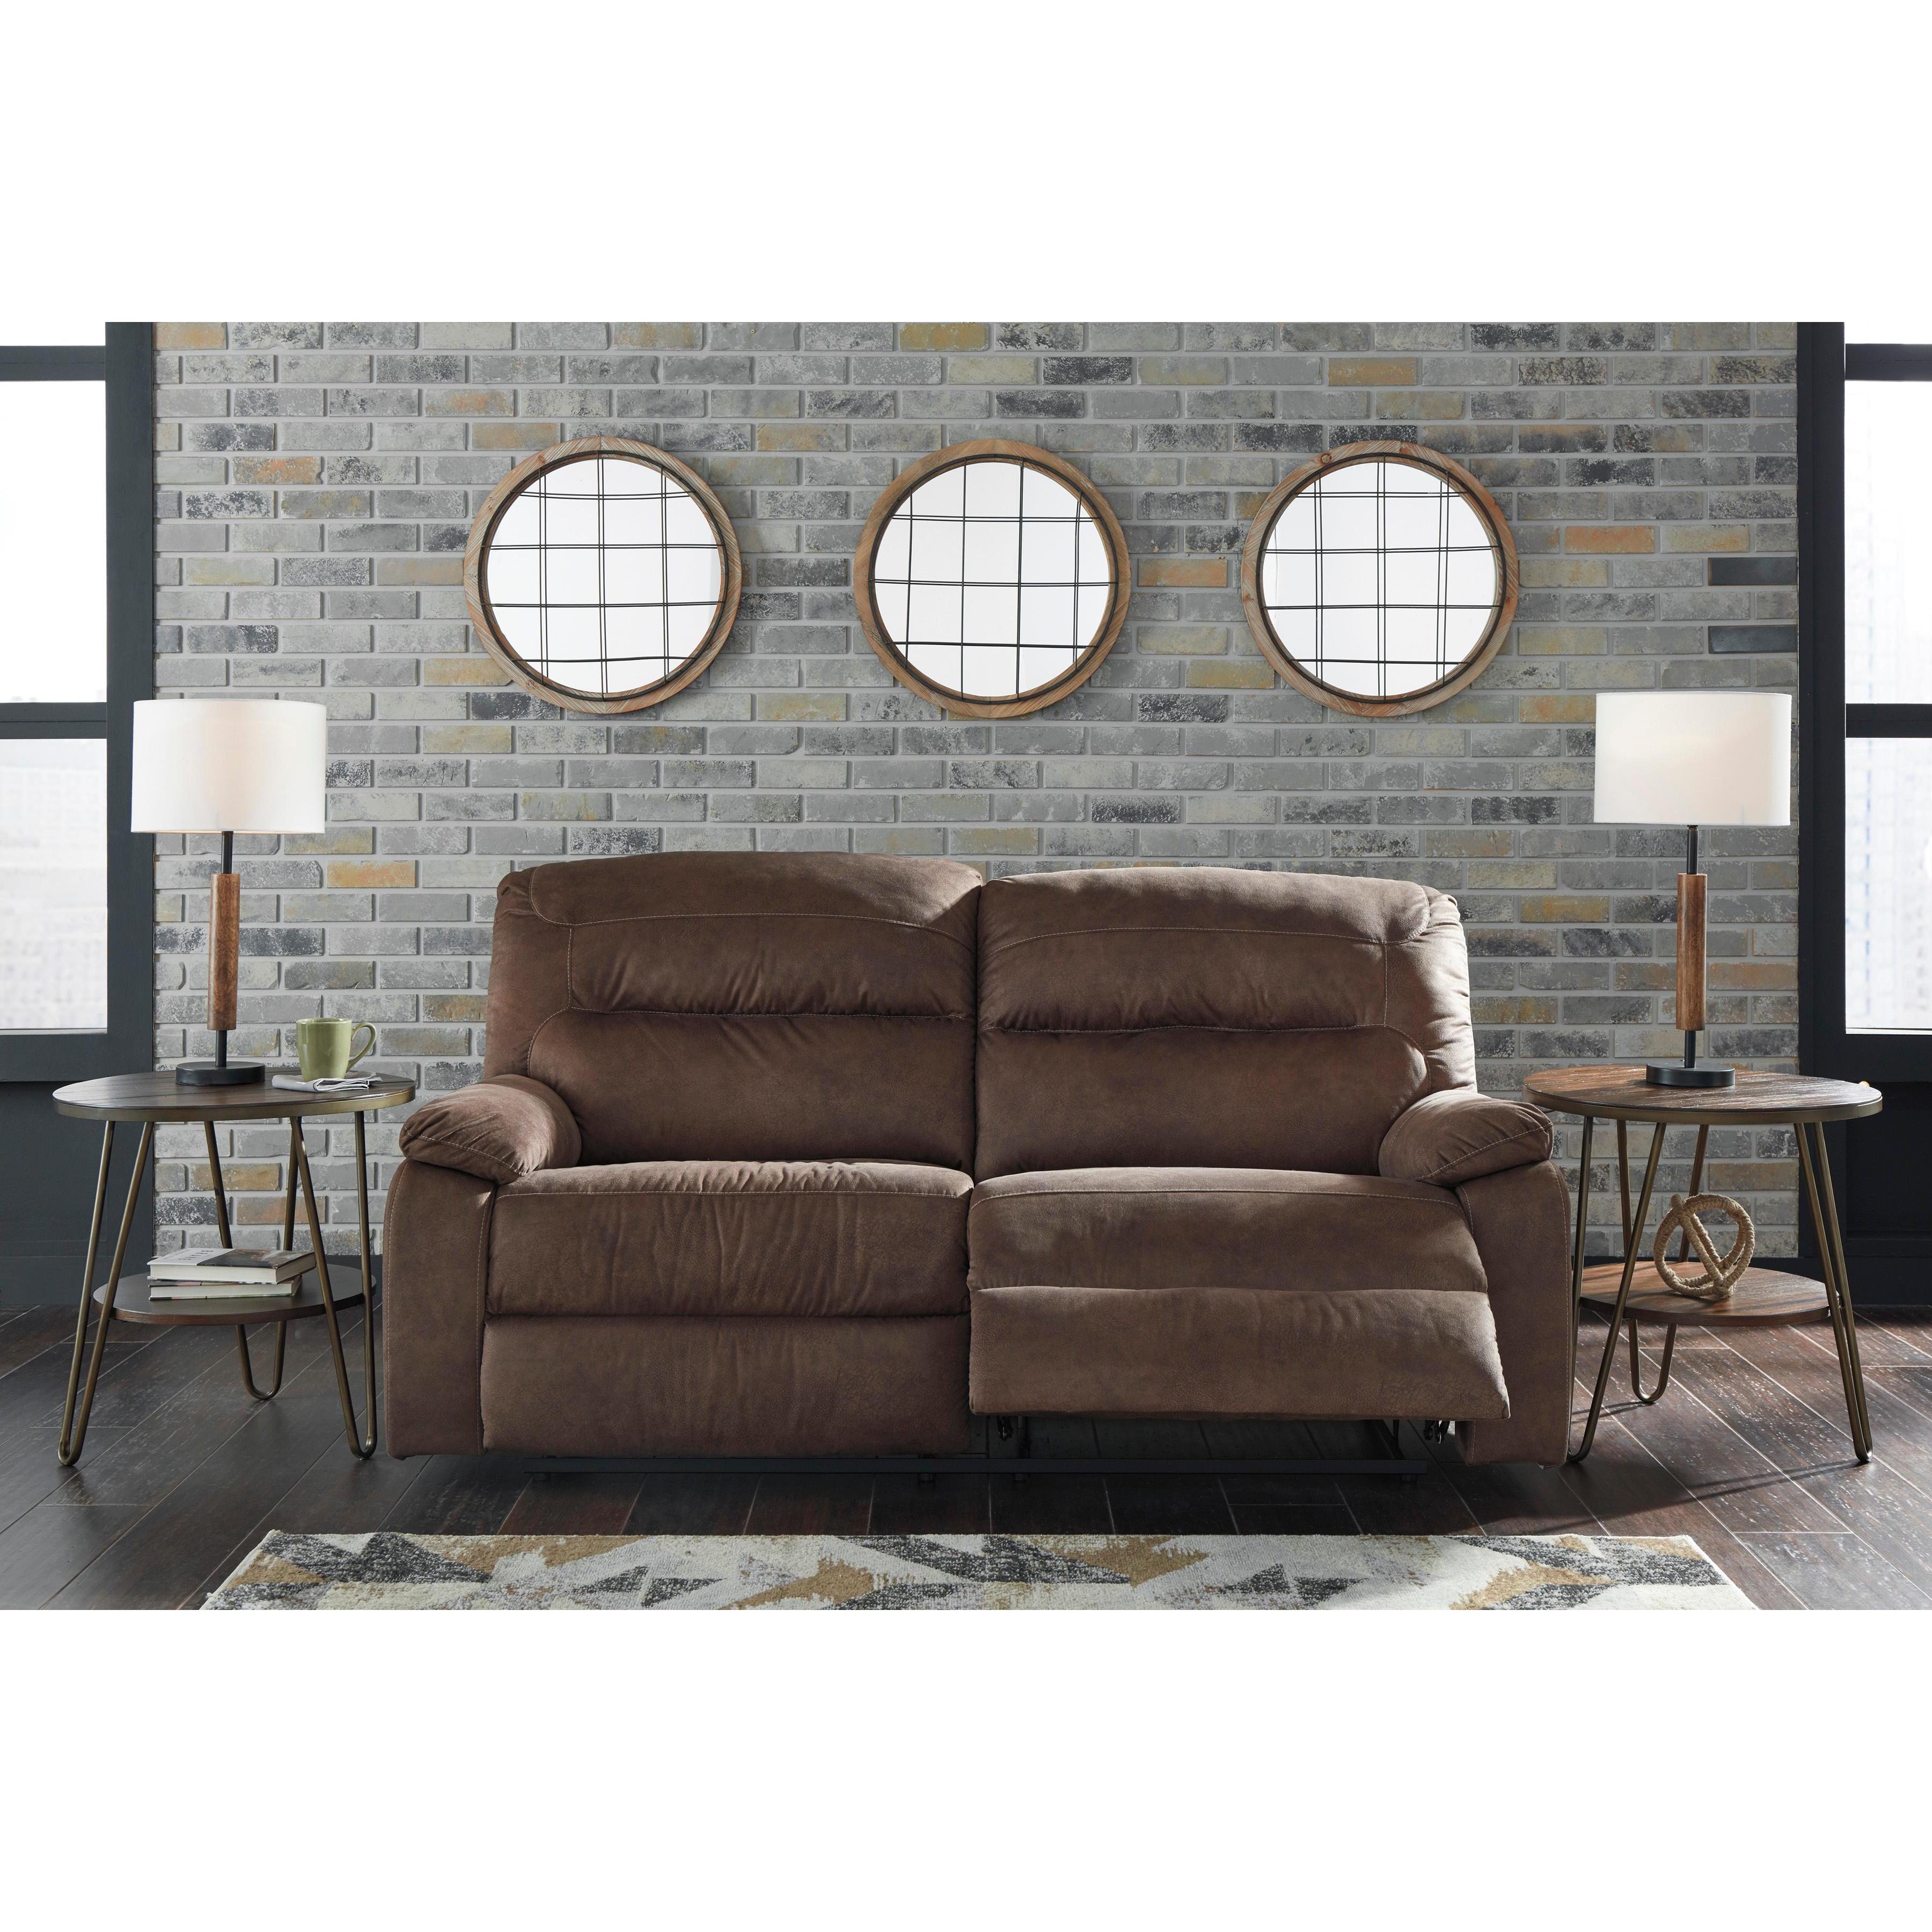 Signature Design by Ashley Bolzano 93802U1 2 pc Reclining Living Room Set IMAGE 3